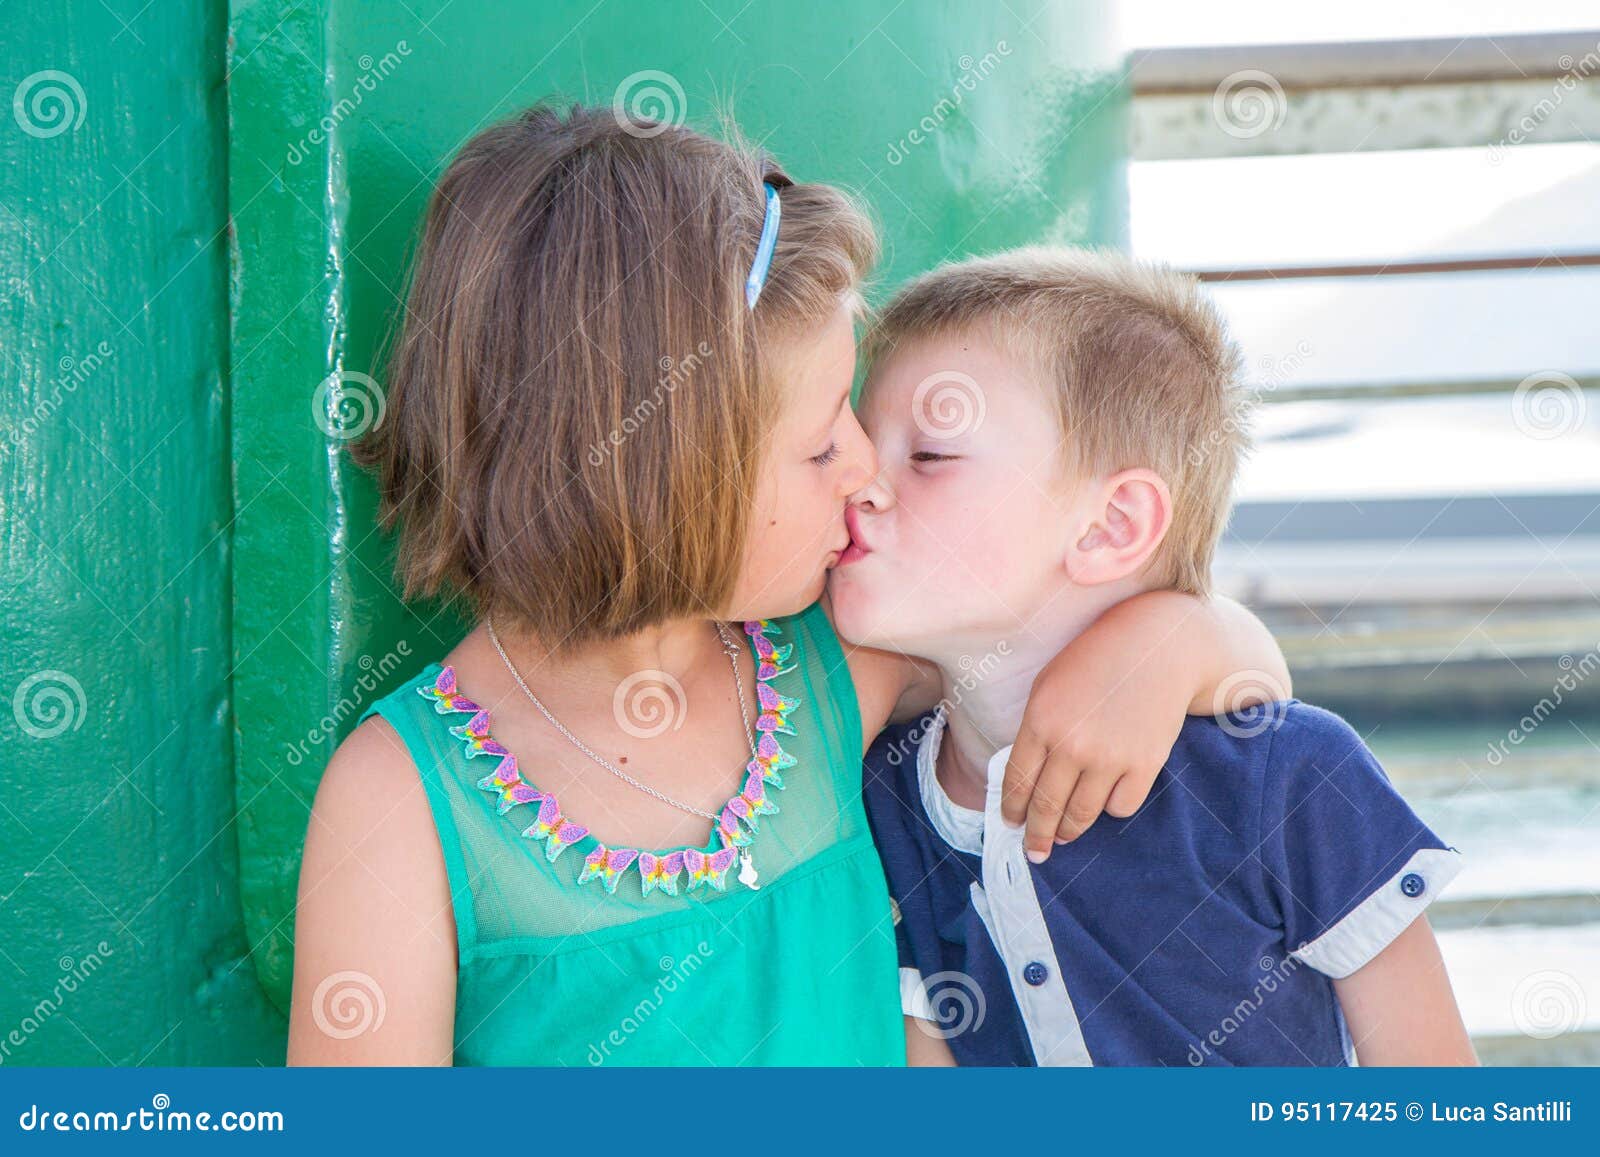 Мама разрешила полизать. Поцелуй братаси сестры. Поцелуй братьев. Детский поцелуй в губы брата и сестры. Поцелуй девочек сестричек.